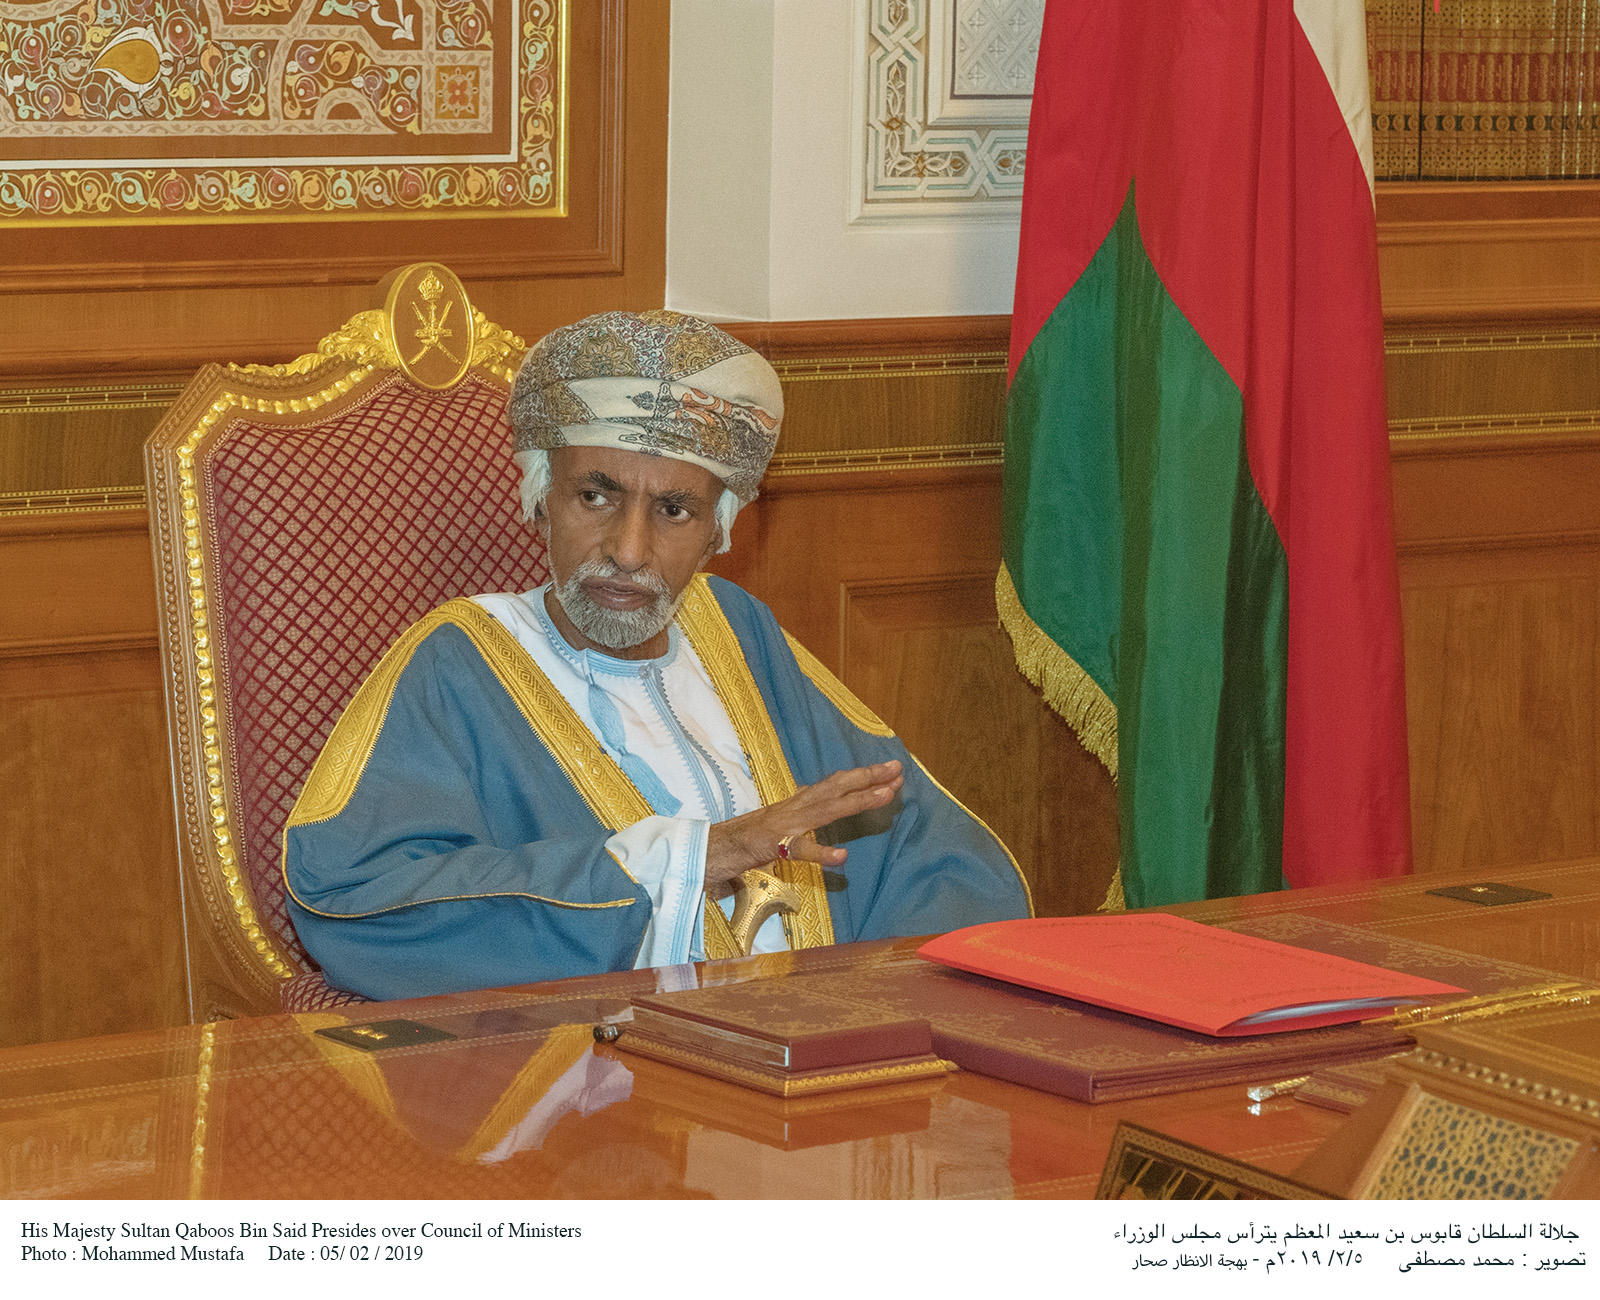 بالصور: جلالة السلطان قابوس يترأس اجتماع مجلس الوزراء